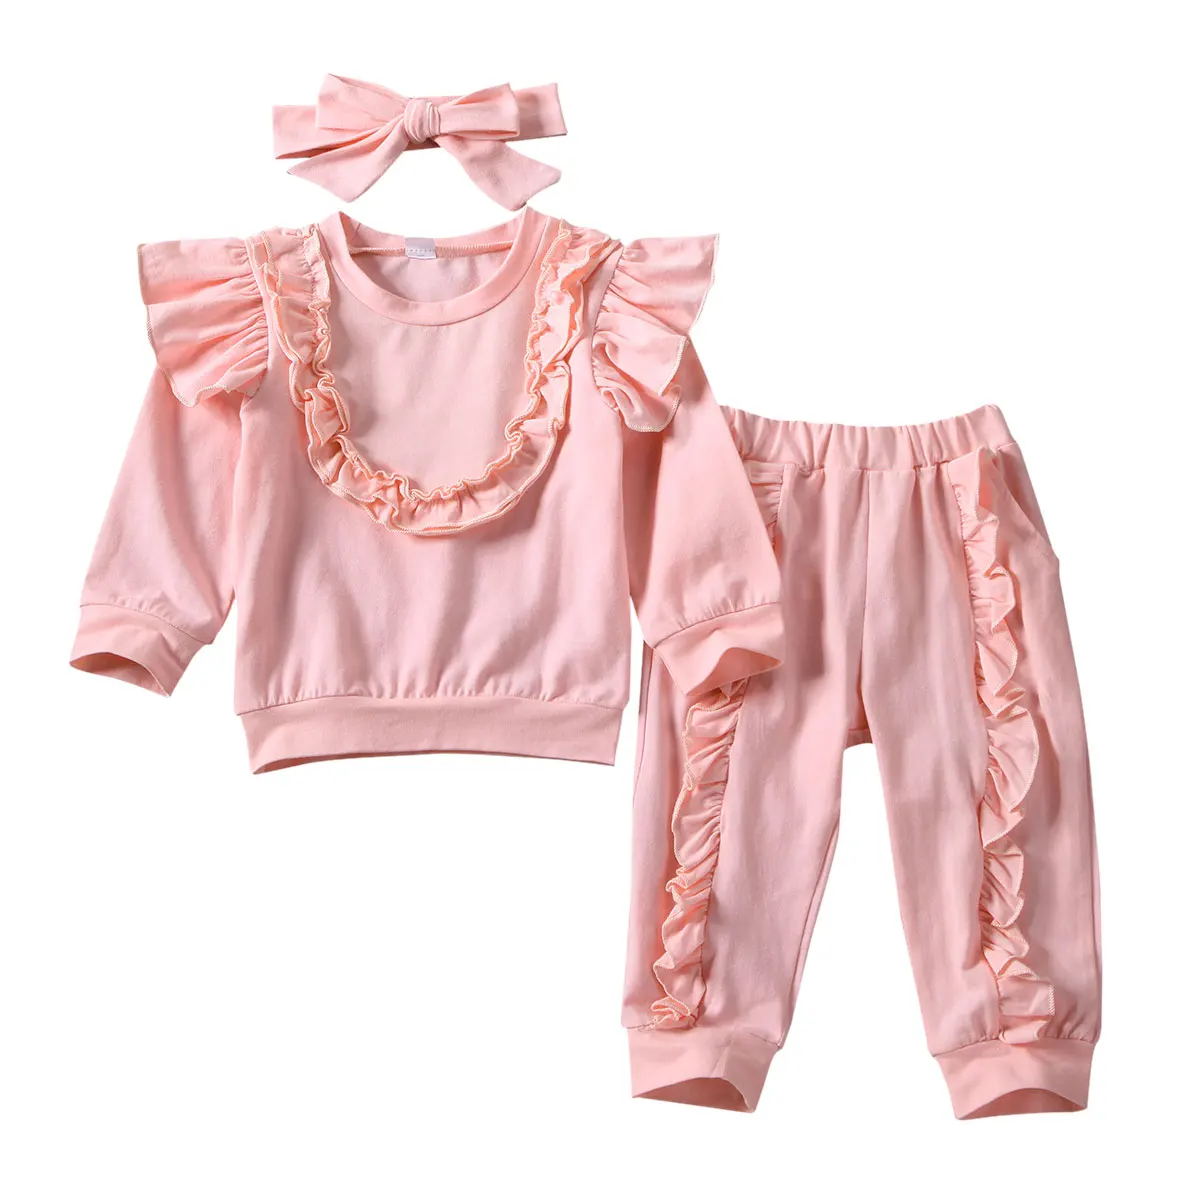 От 1 до 5 лет комплекты одежды для маленьких девочек Однотонная футболка с длинными рукавами и оборками и штаны, комплект одежды, повязка на голову - Цвет: Розовый